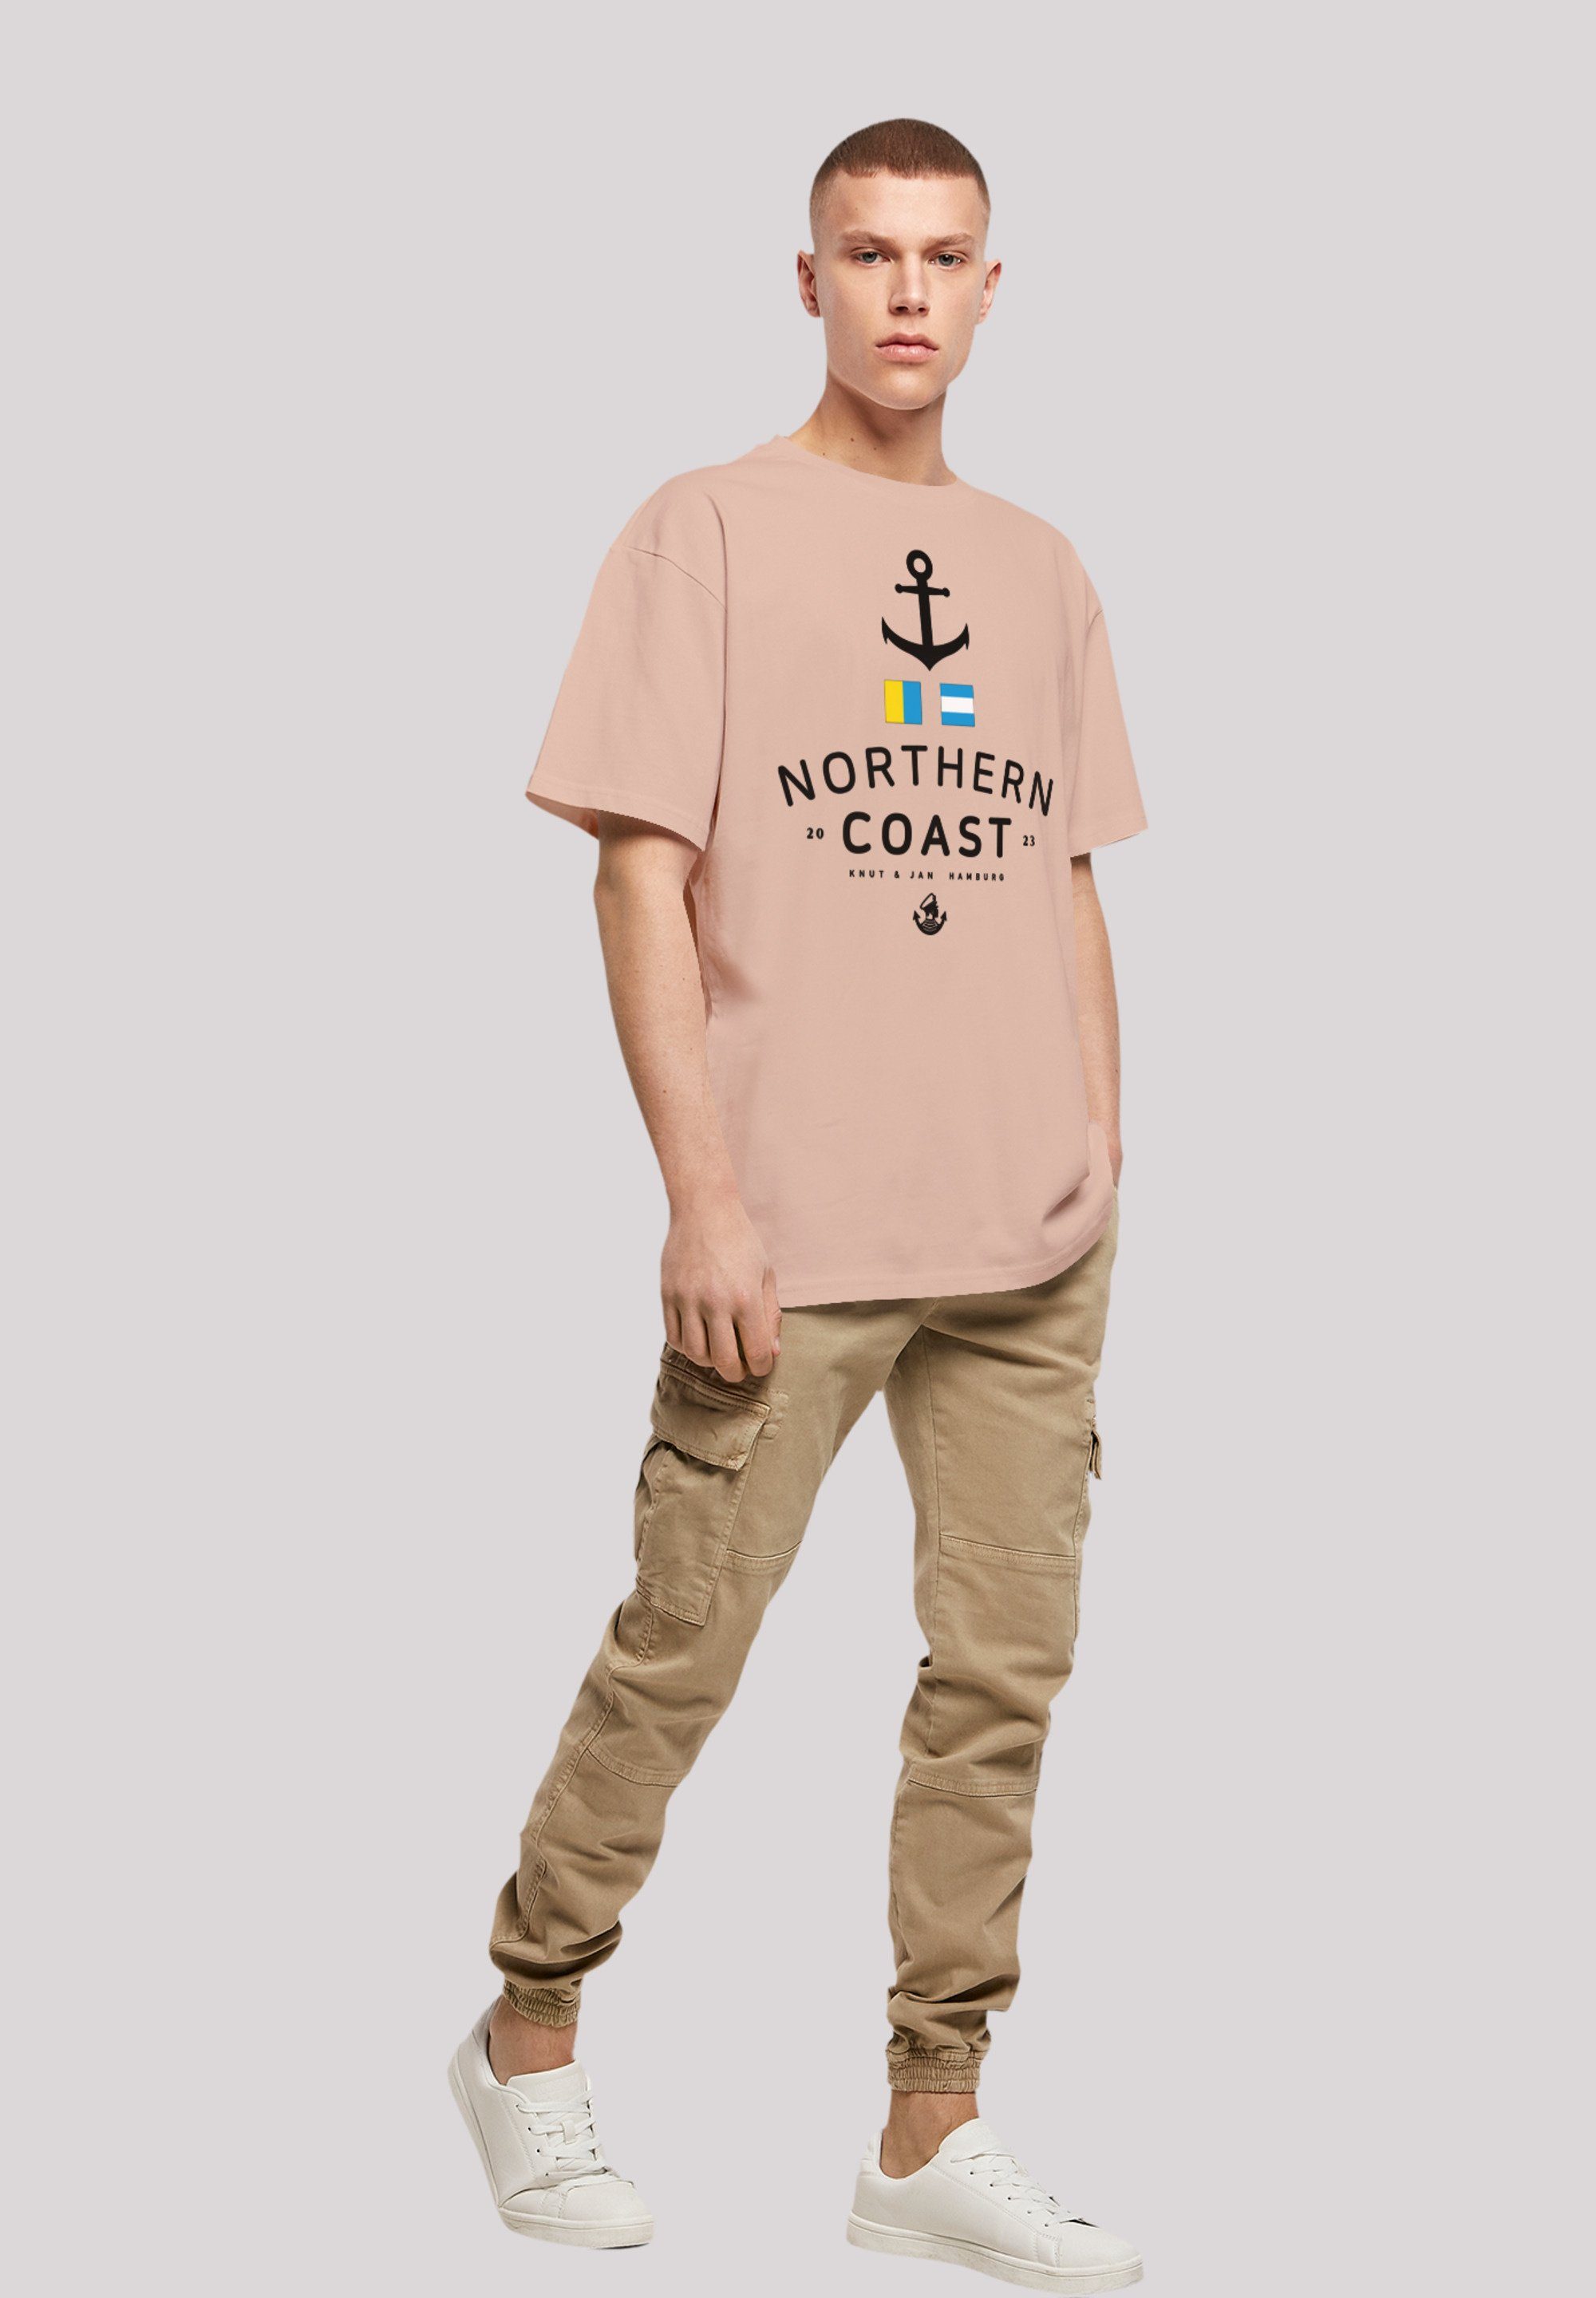 F4NT4STIC T-Shirt Nordsee Nordic Coast Knut Jan Hamburg & amber Print